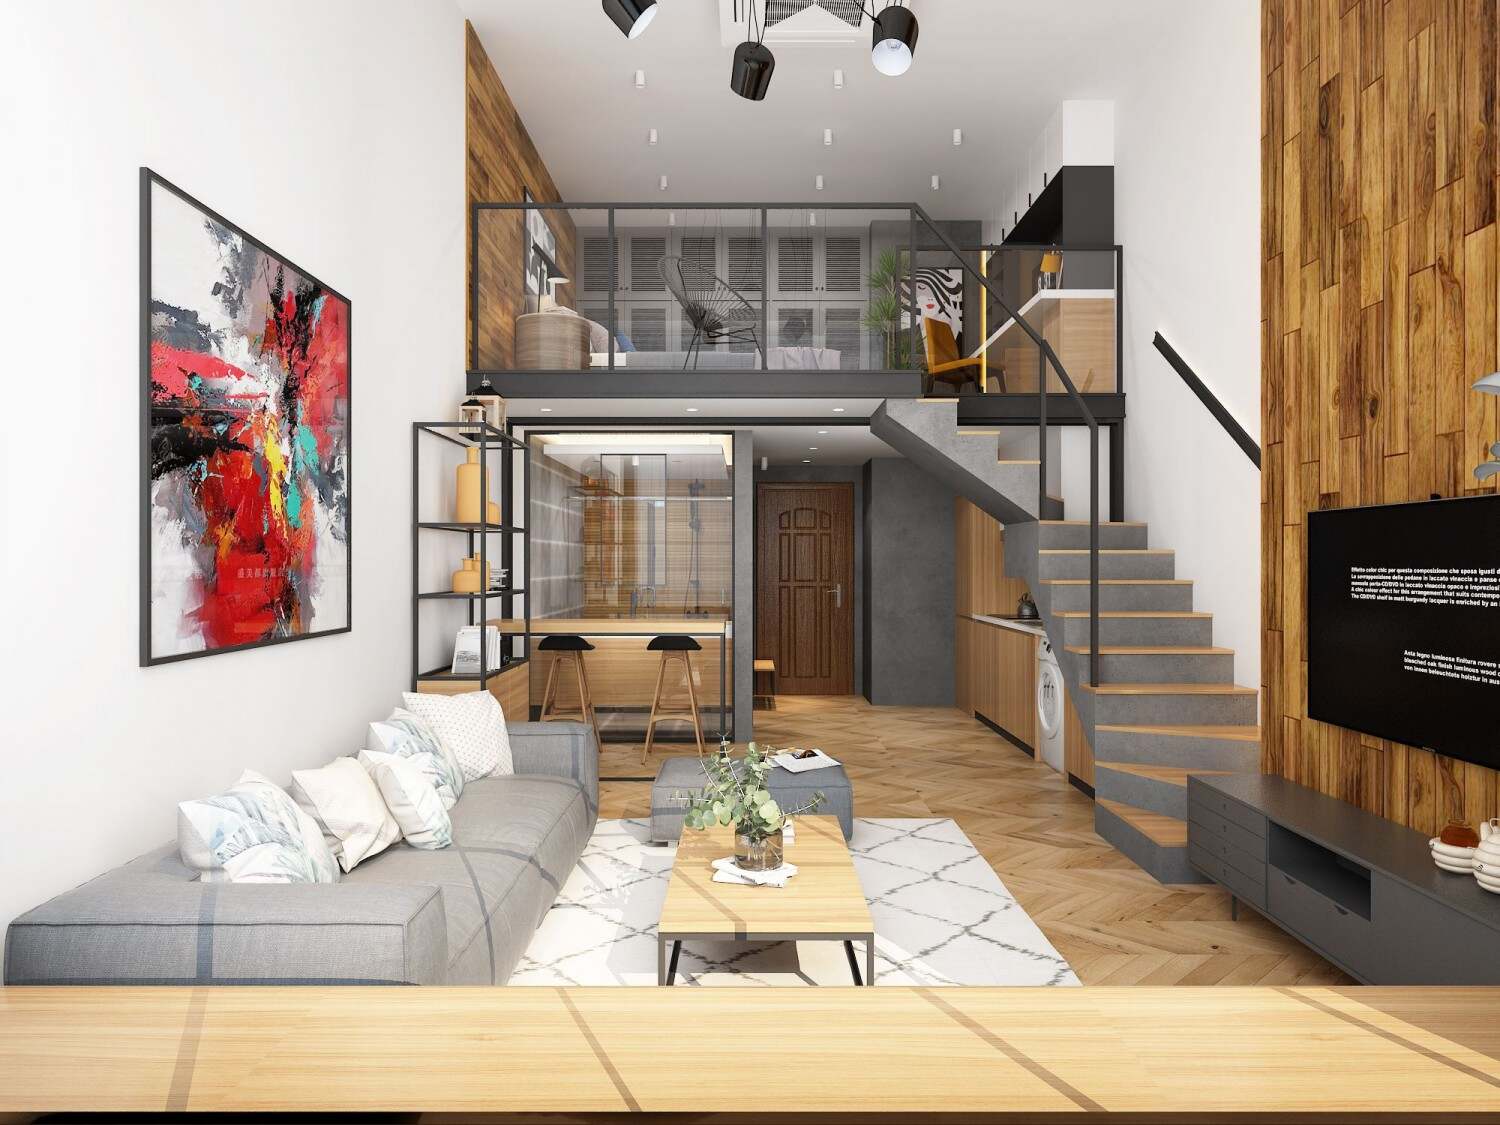 现代简约LOFT公寓 - 效果图交流区-建E室内设计网